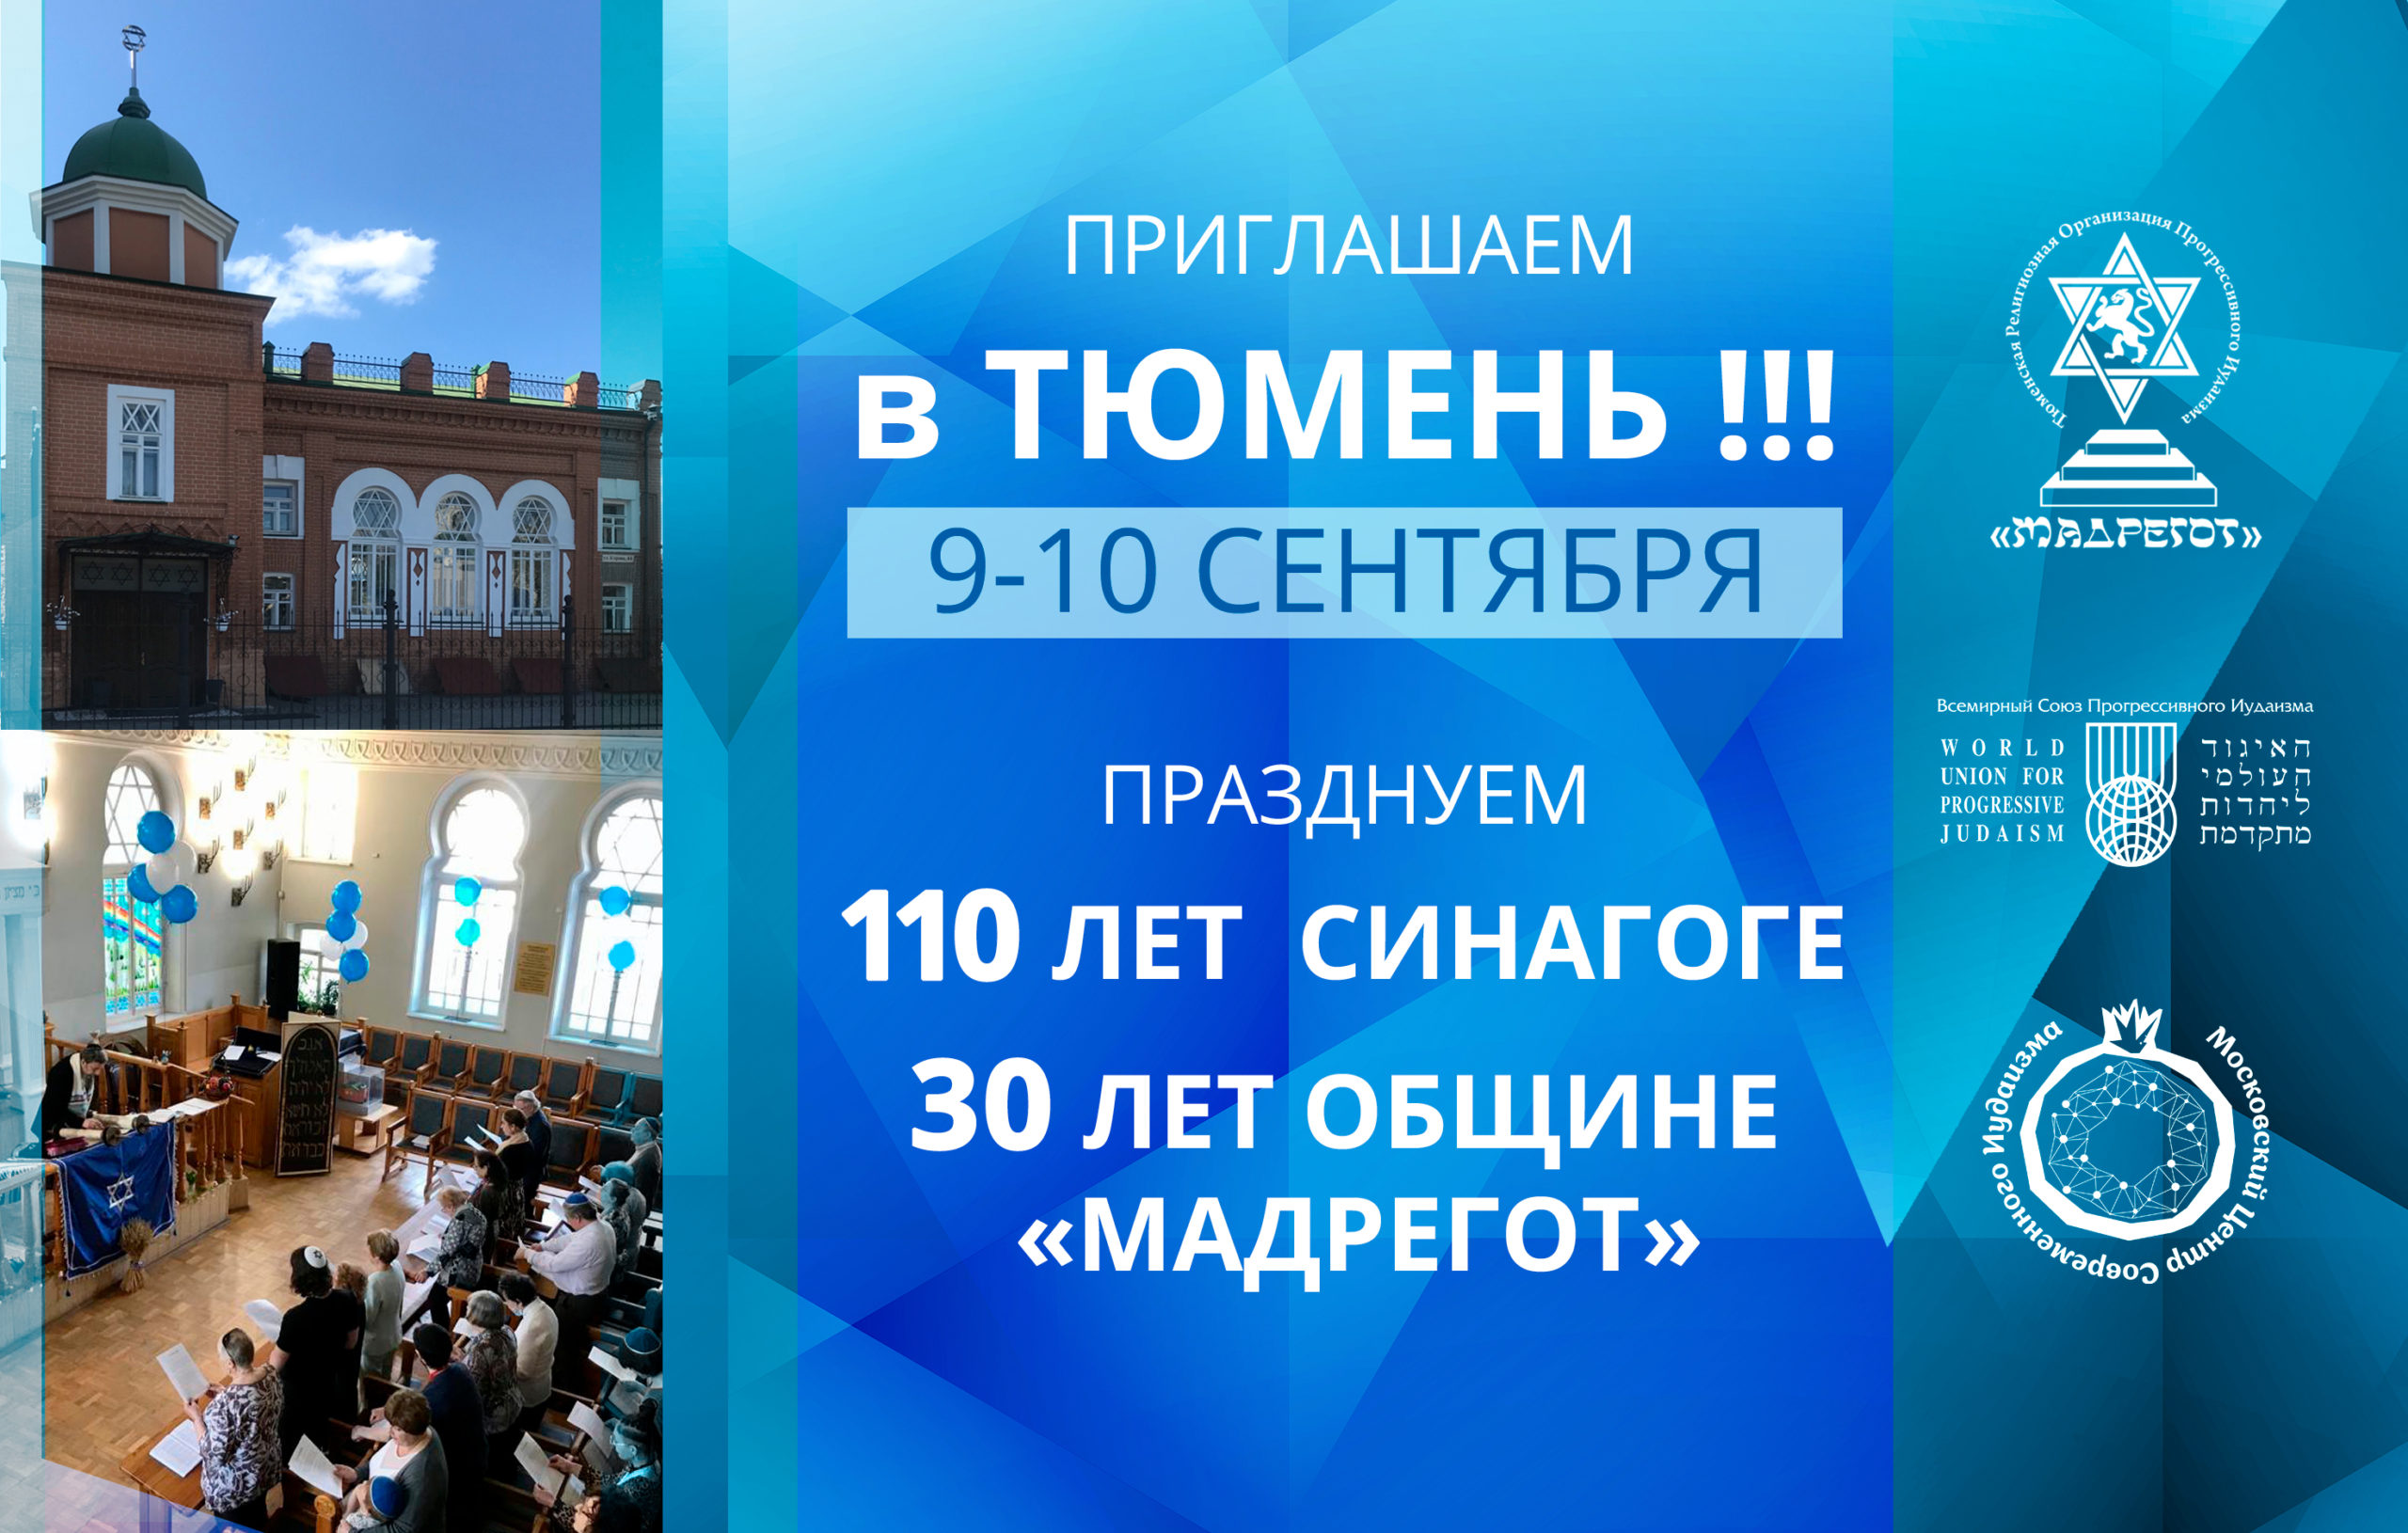 Приглашаем Вас приехать в Тюмень 9-10 сентября на празднование 110-летия Тюменской синагоги и 30-летие общины прогрессивного иудаизма «Мадрегот»!